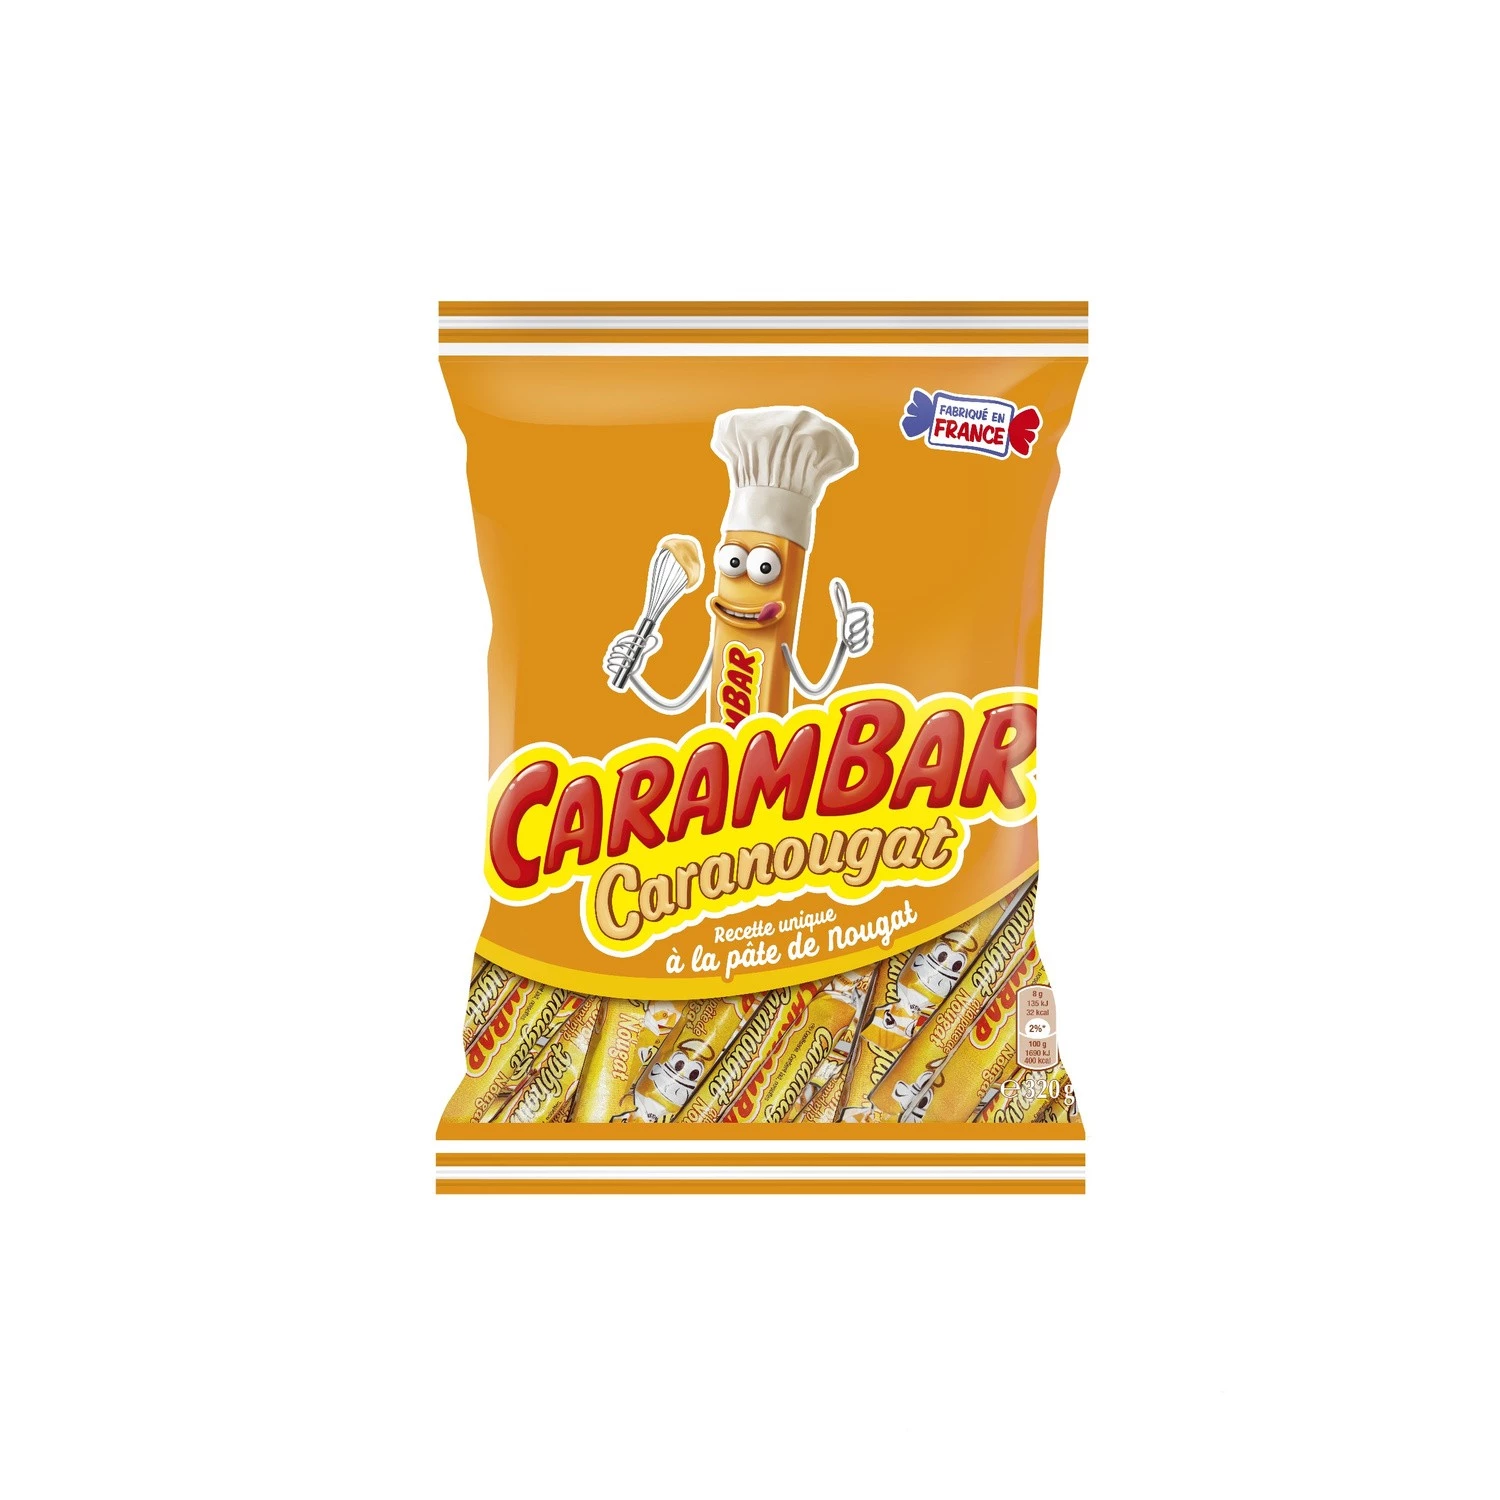 Caramelo caranougat 320g - CARAMBAR